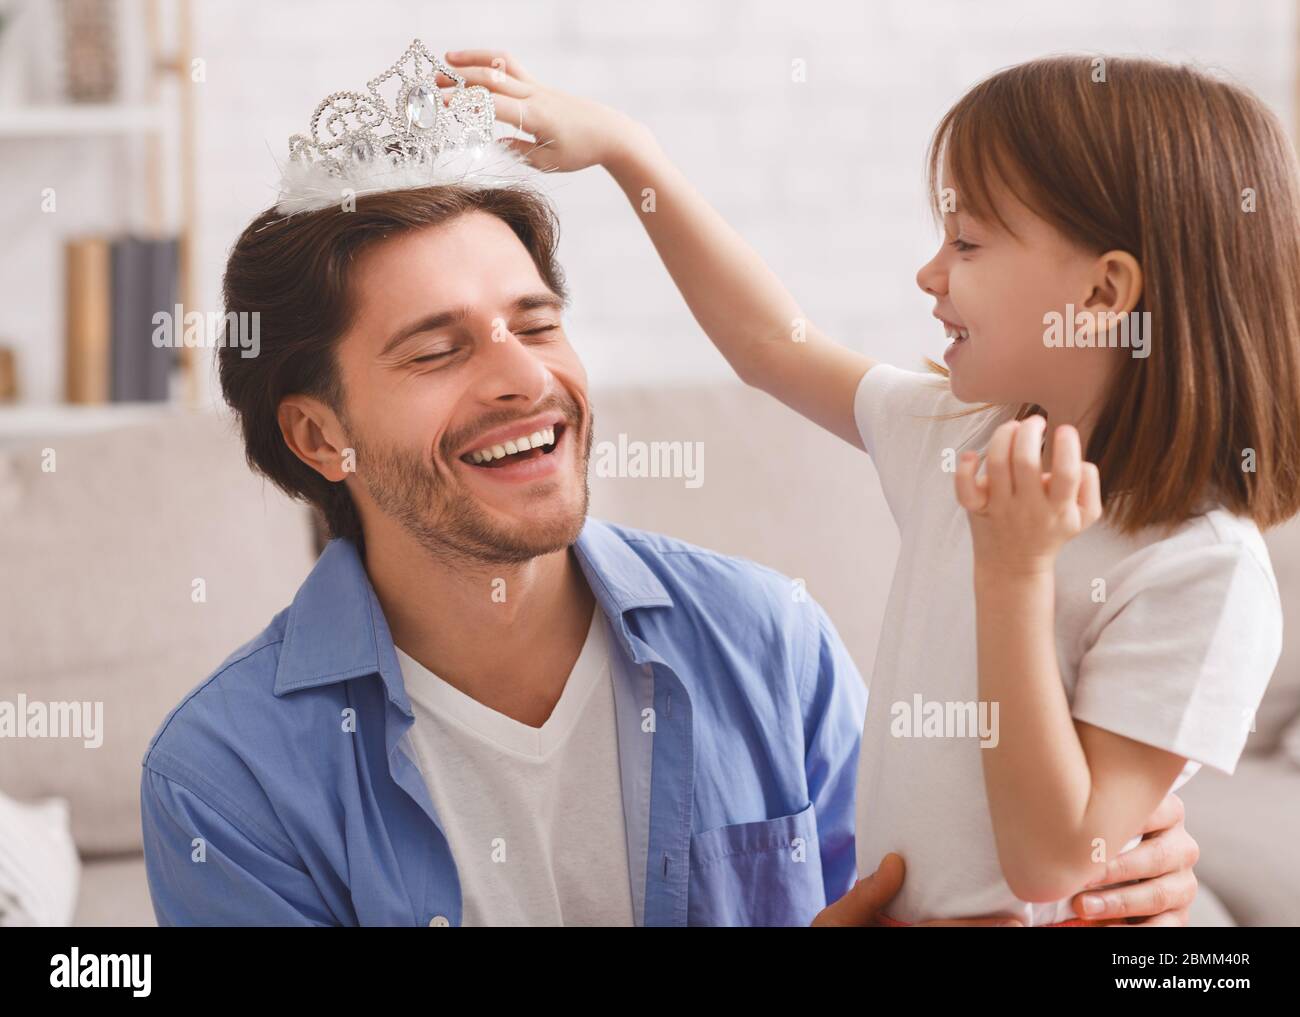 Kleines Mädchen, das Krone auf den Kopf ihres lachenden Vaters legt Stockfoto